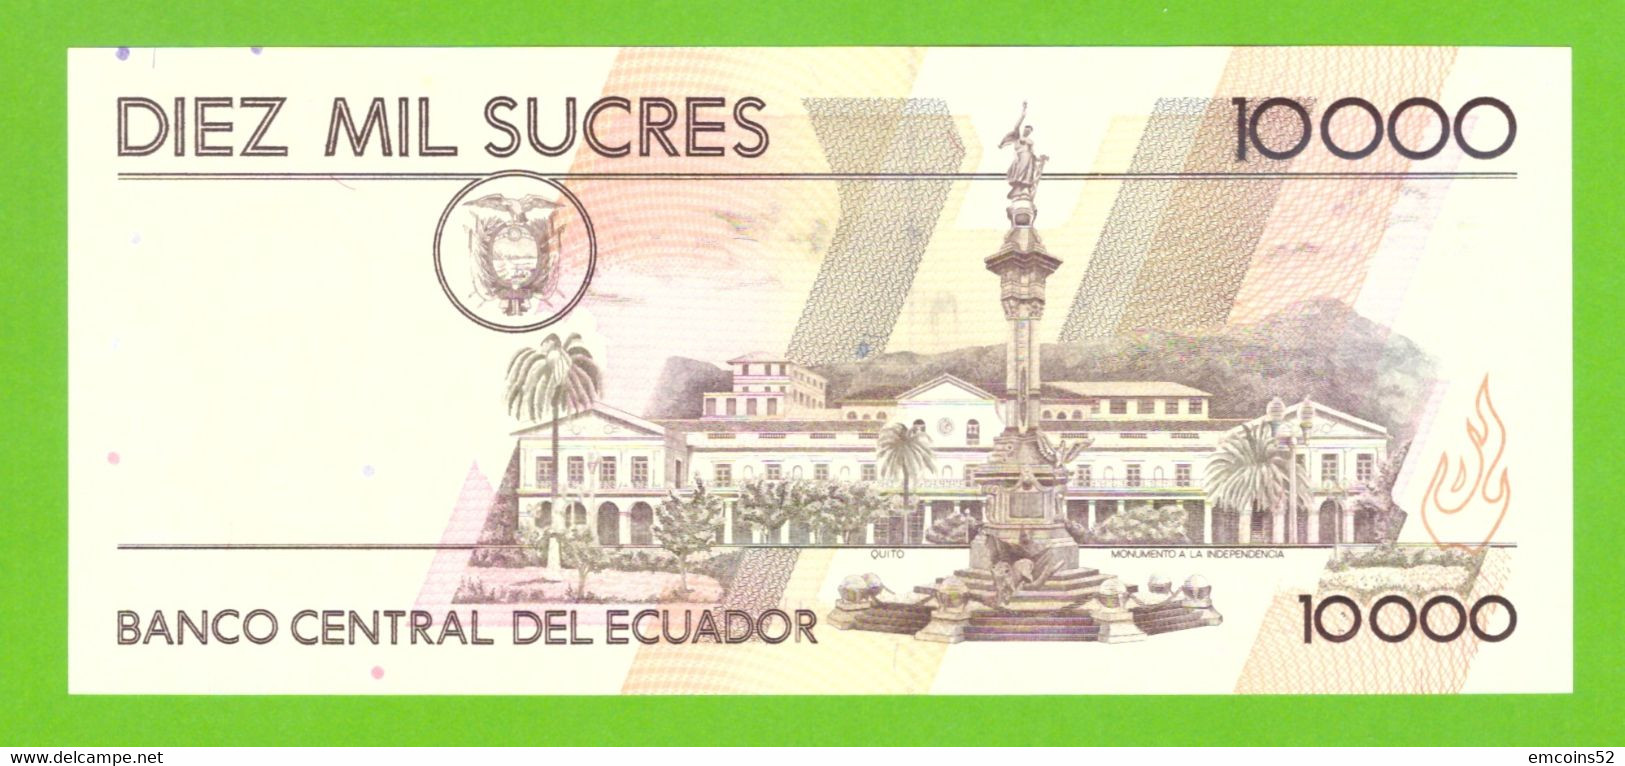 ECUADOR 10000 SUCRES 1995 AM  P-127b  UNC - Ecuador